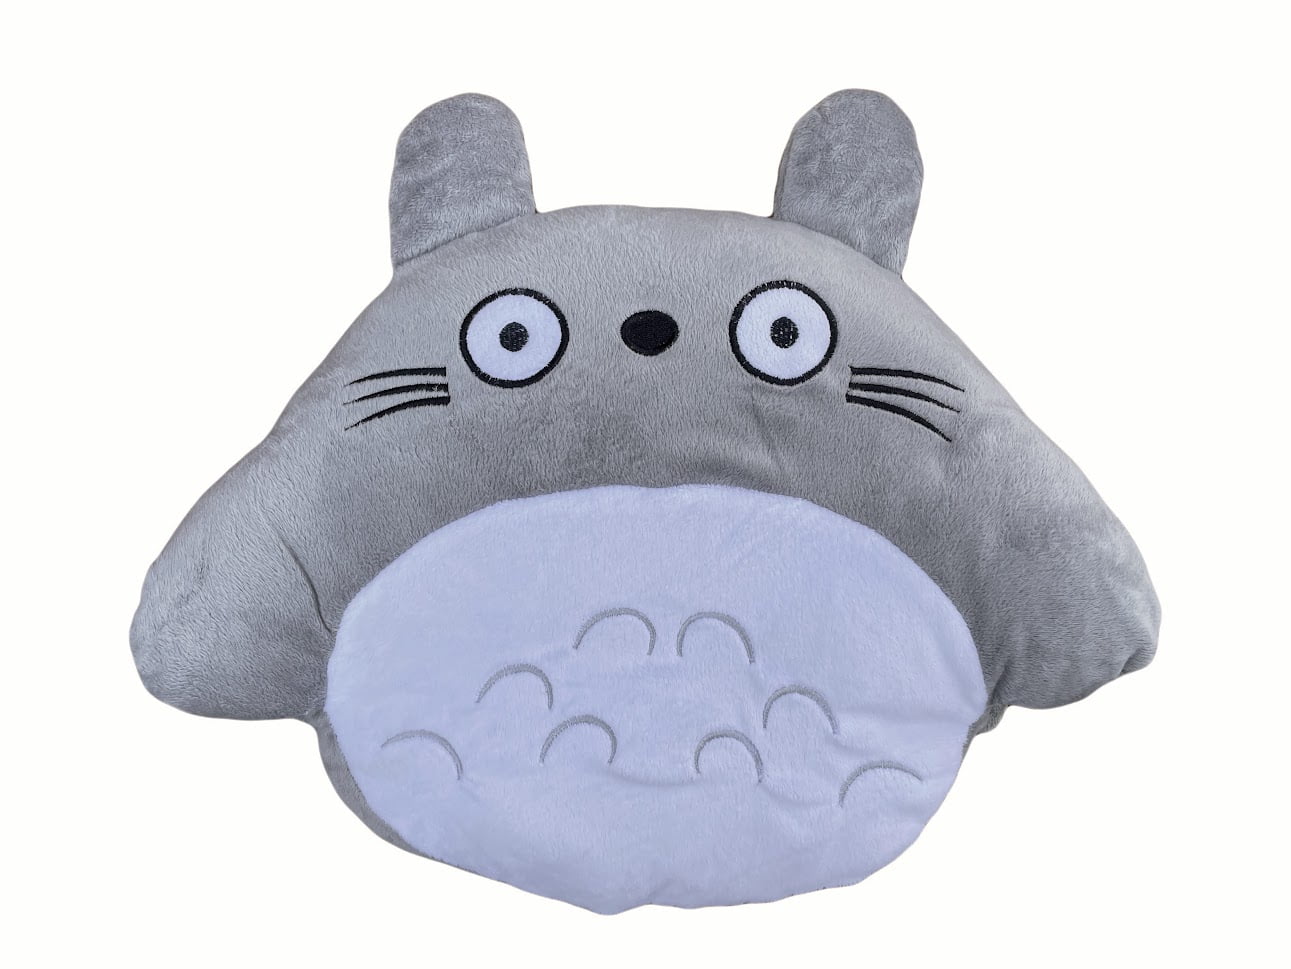 My Neighbor Totoro Plush Travel Pillow And Hand Warmer Walmart Com